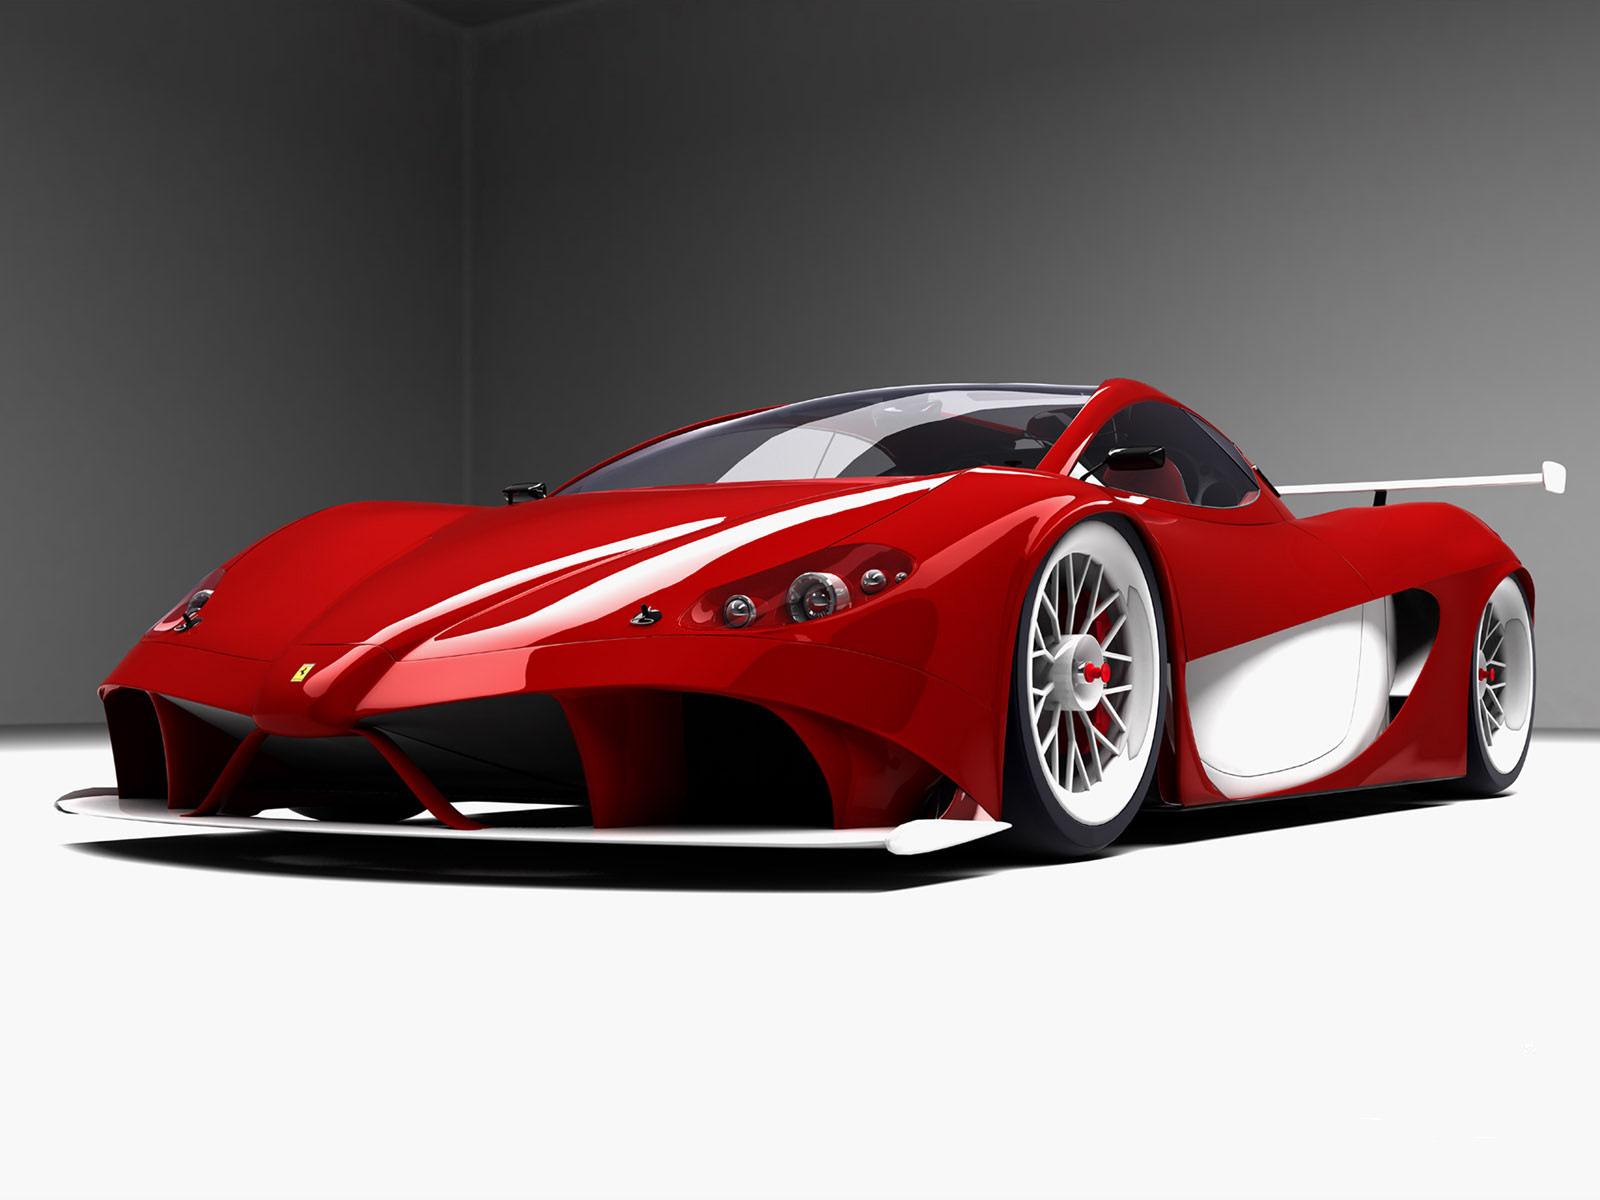 Fond d'écran gratuit de Ferrari numéro 10830